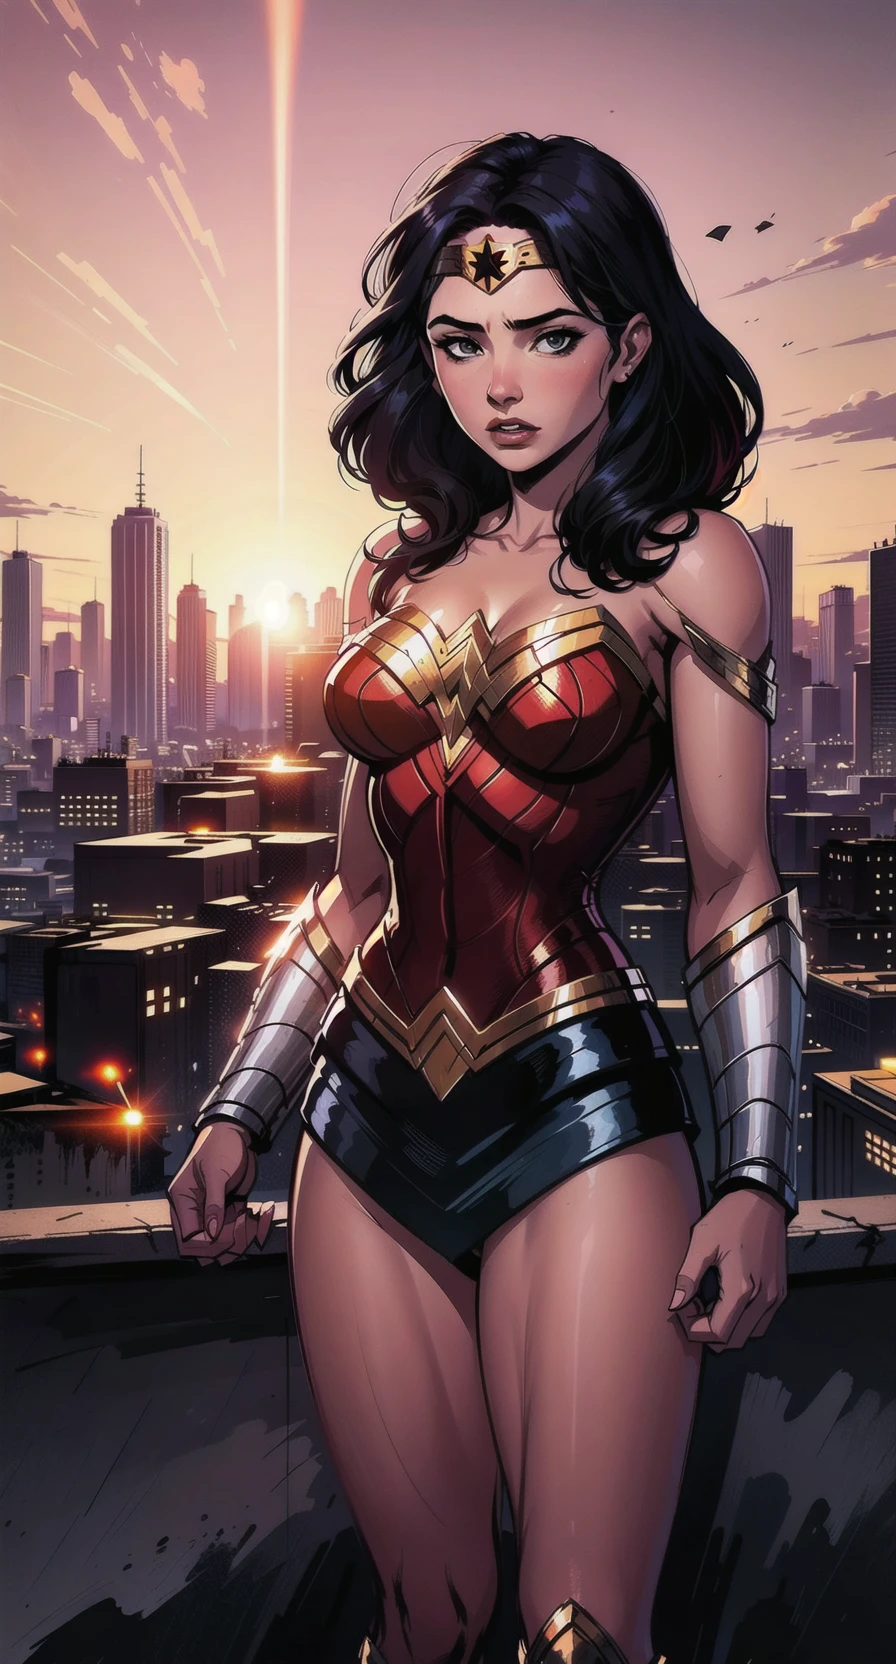 رسم توضيحي جميل يظهر Wonder Woman واقفاً قبل غروب الشمس المذهل, تطل على مناظر المدينة الشاسعة